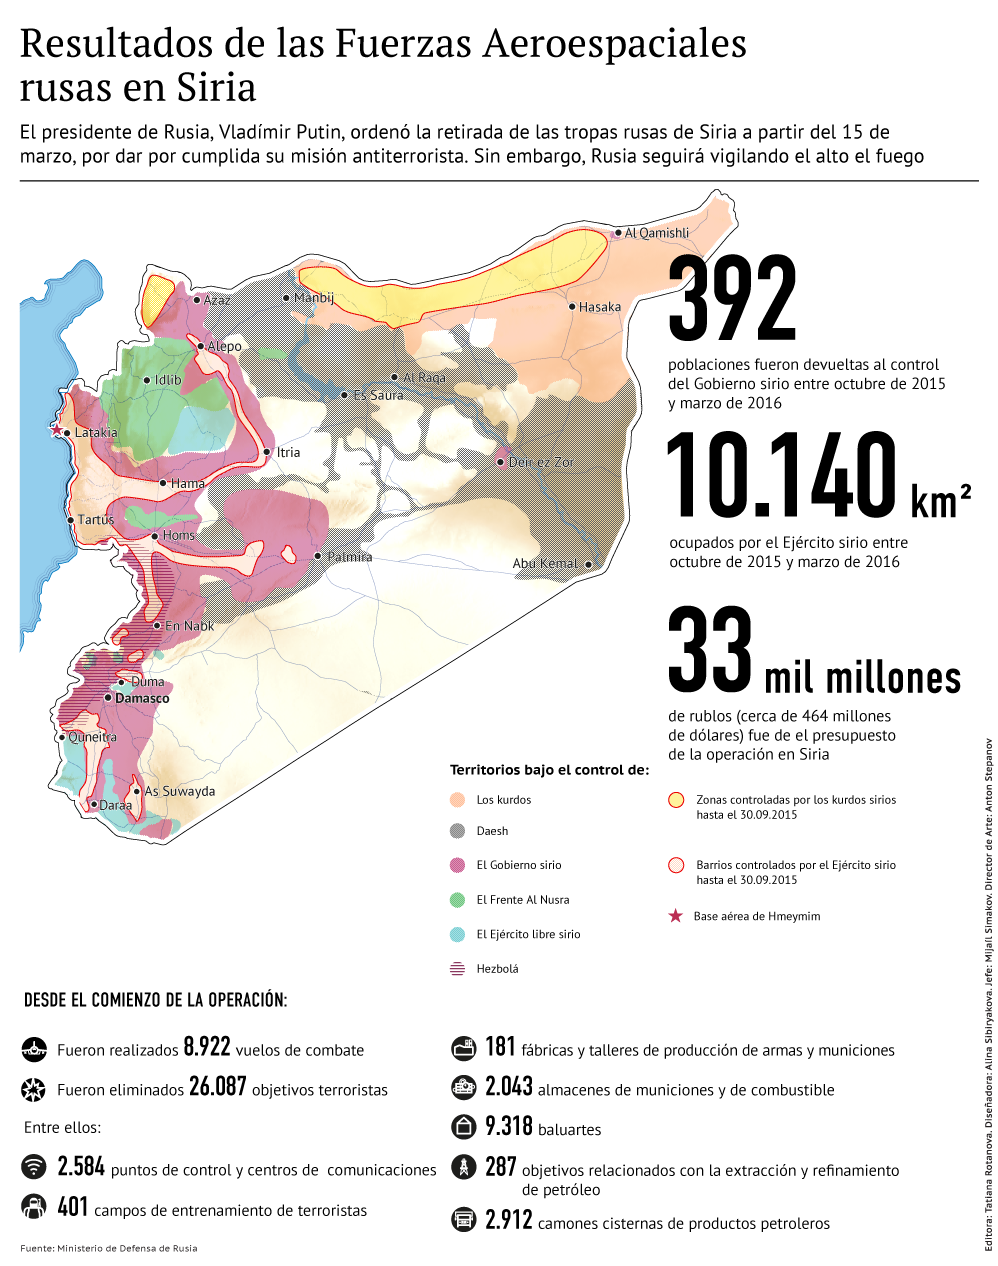 Los resultados de las acciones de las Fuerzas Aeroespaciales de Rusia en Siria - Sputnik Mundo